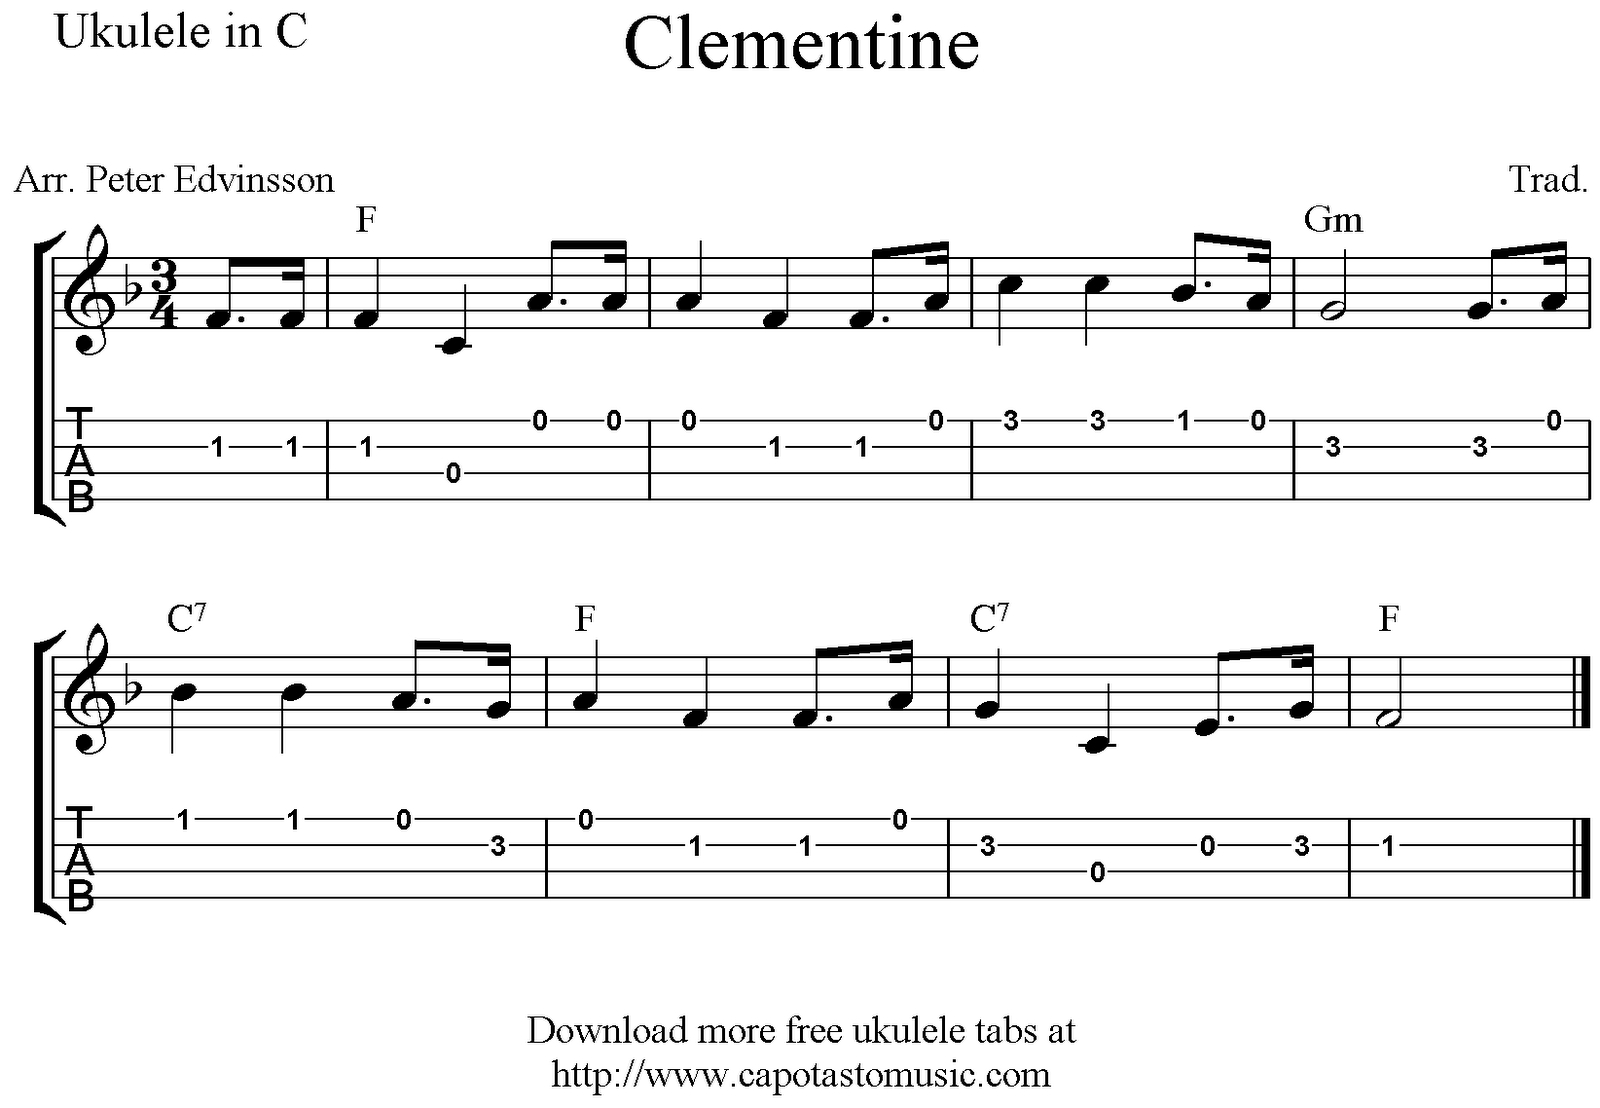 Clementine, Free Easy Ukulele Tab Sheet Music - Free Printable Ukulele Songs